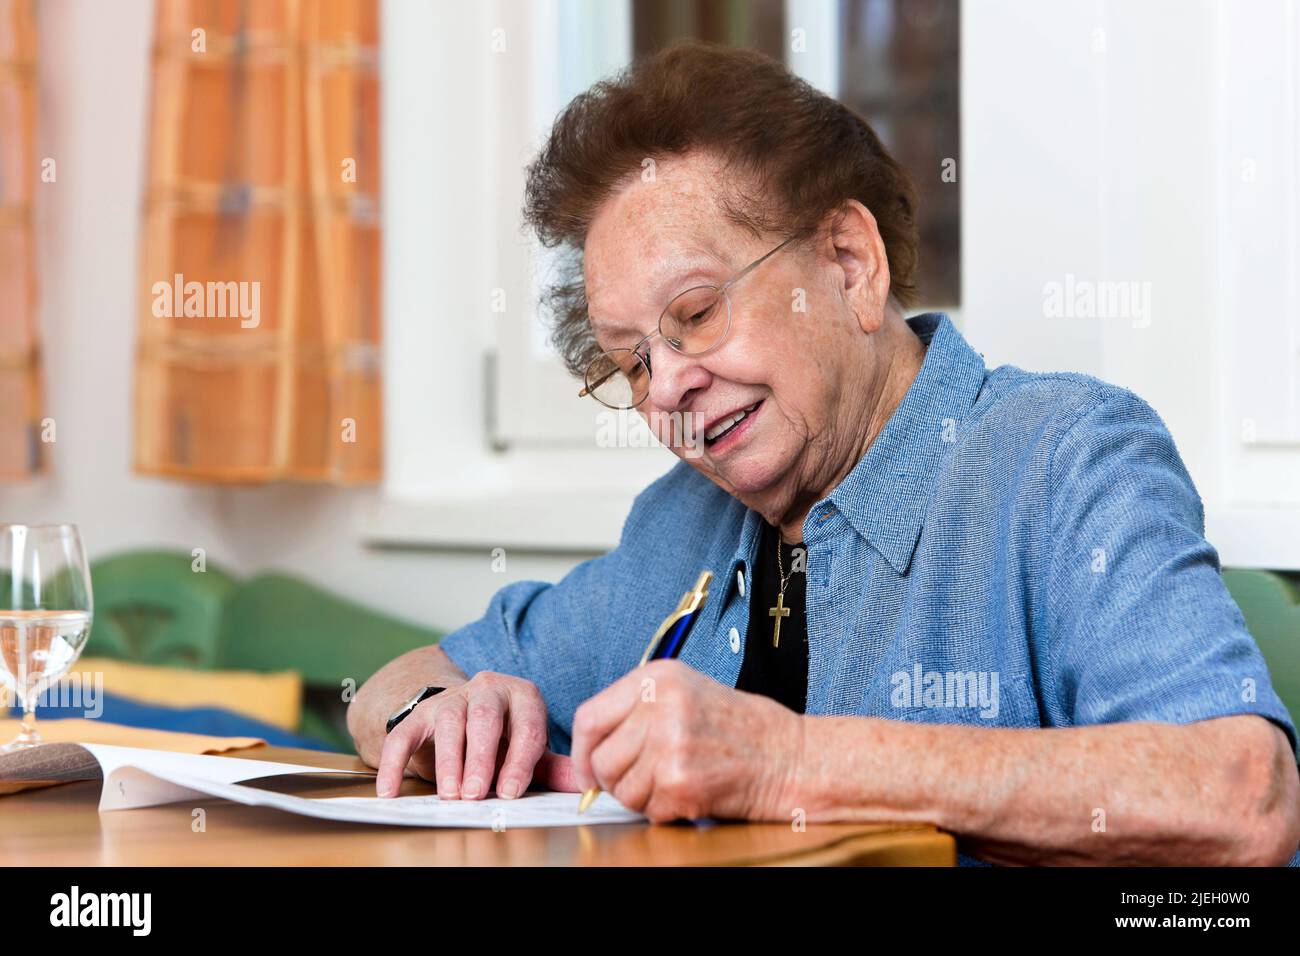 Eine alte Frau unterschreibt einen Vertrag, Senioren, Stock Photo